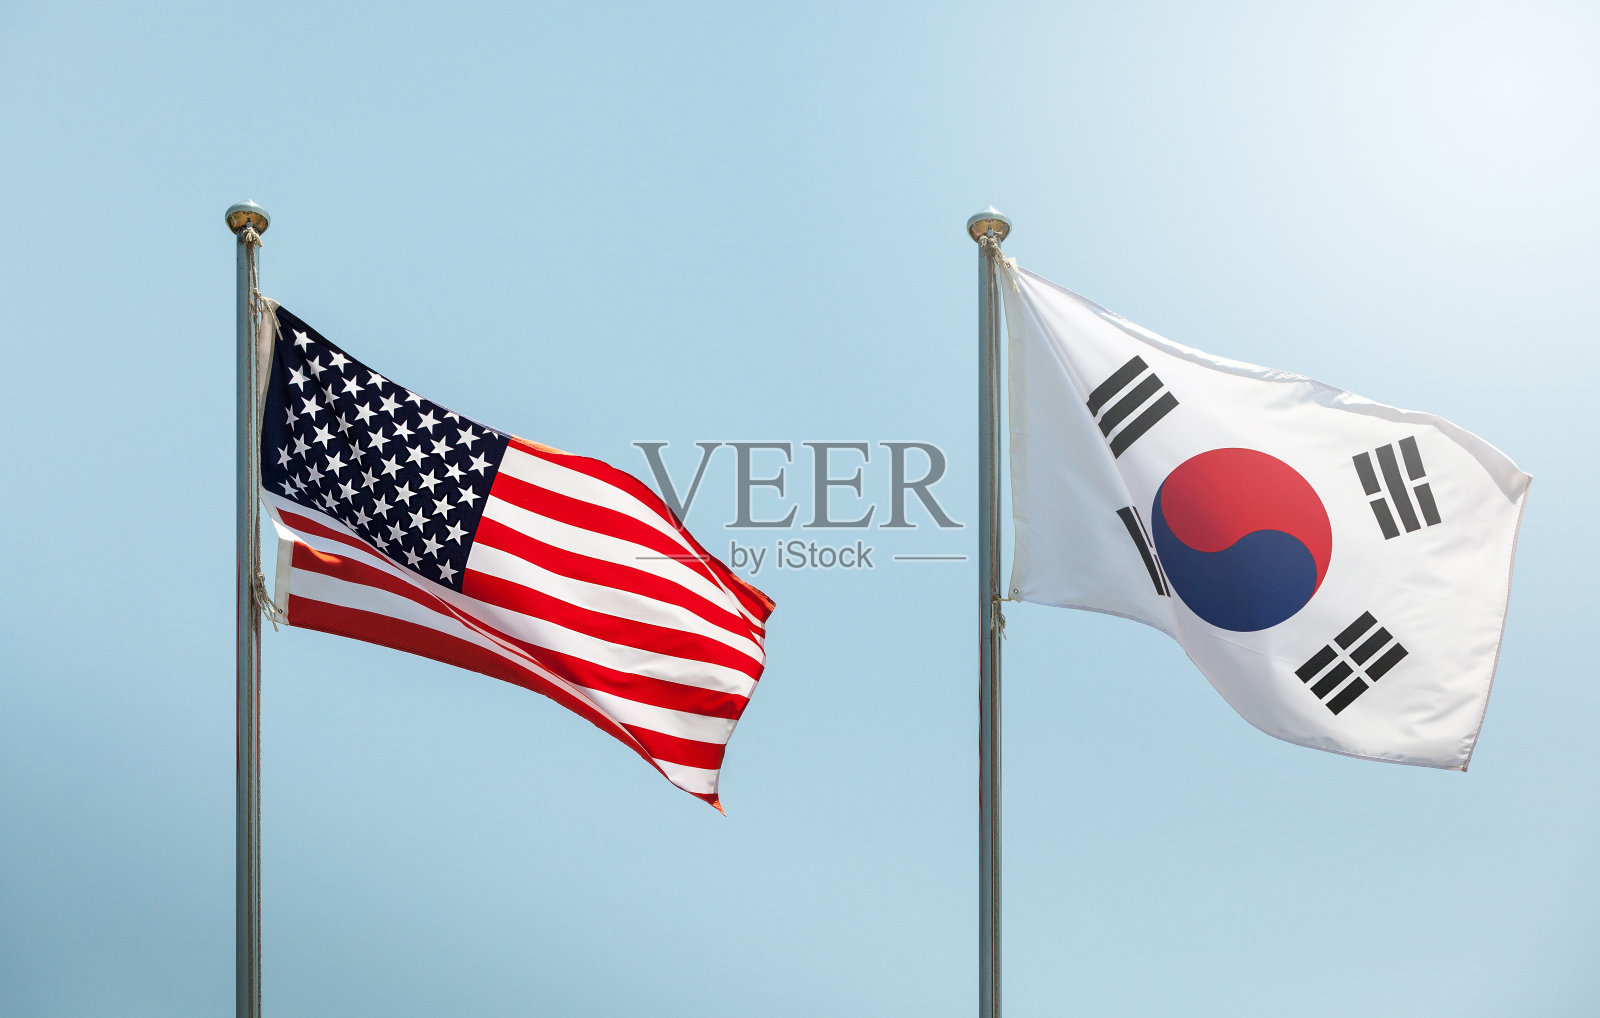 在蓝天上挥舞着美国国旗、星条旗、星条旗和韩国国旗、韩国和美国联盟、美国和韩国联盟照片摄影图片